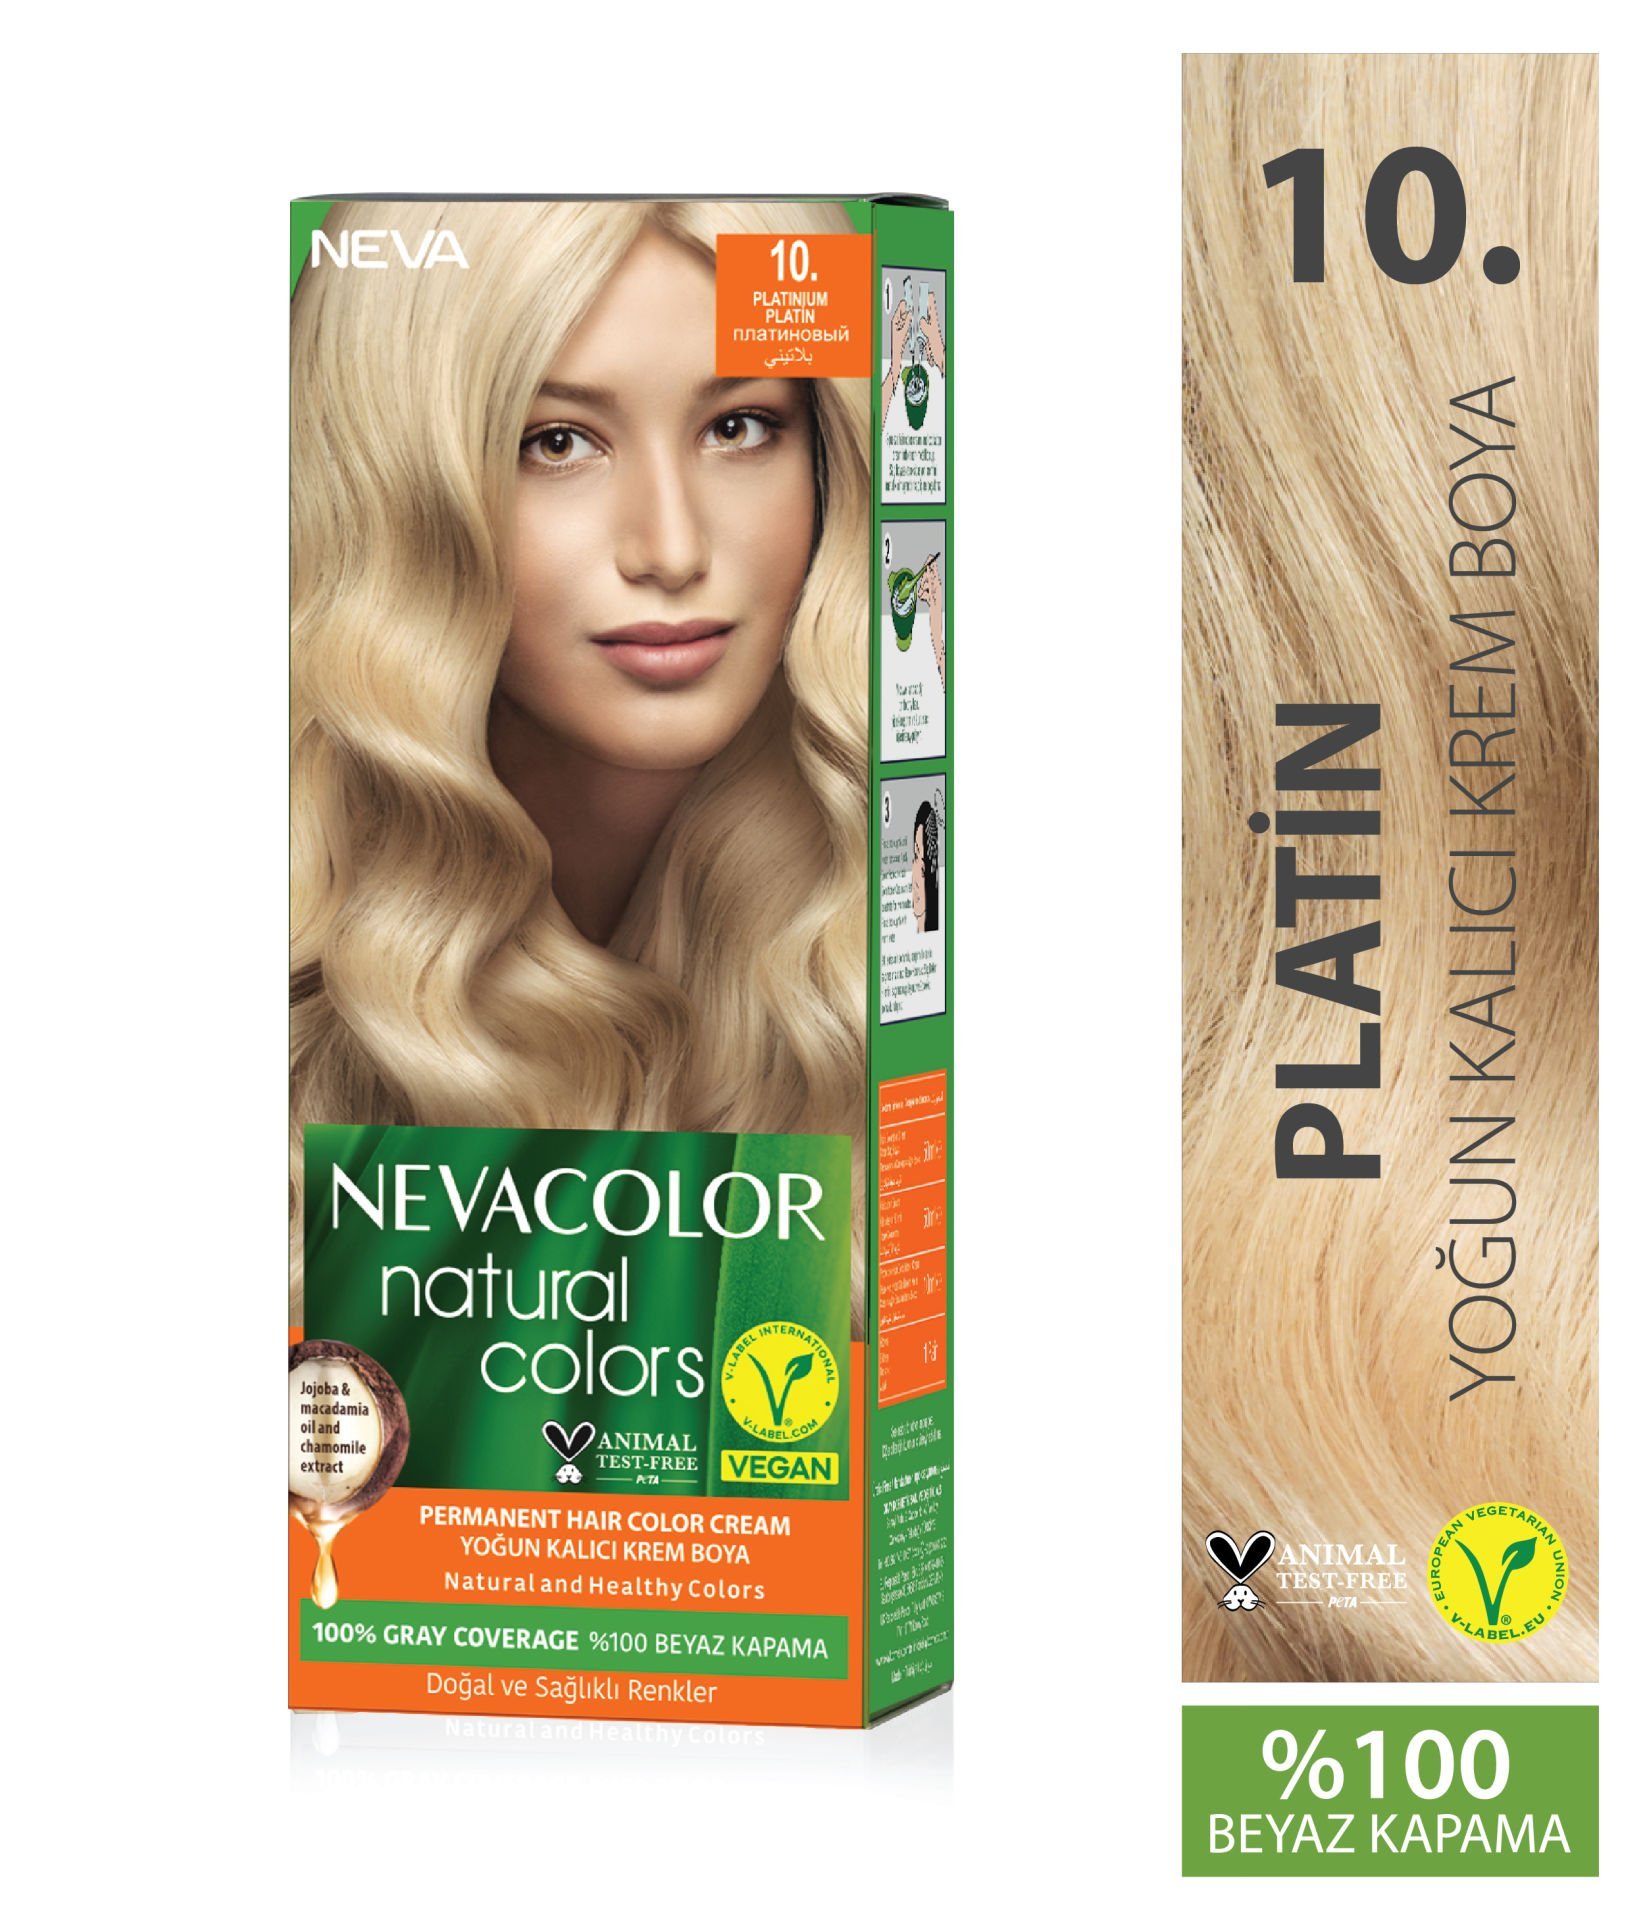 Nevacolor Natural Colors 10 Platin - Kalıcı Krem Saç Boyası Seti